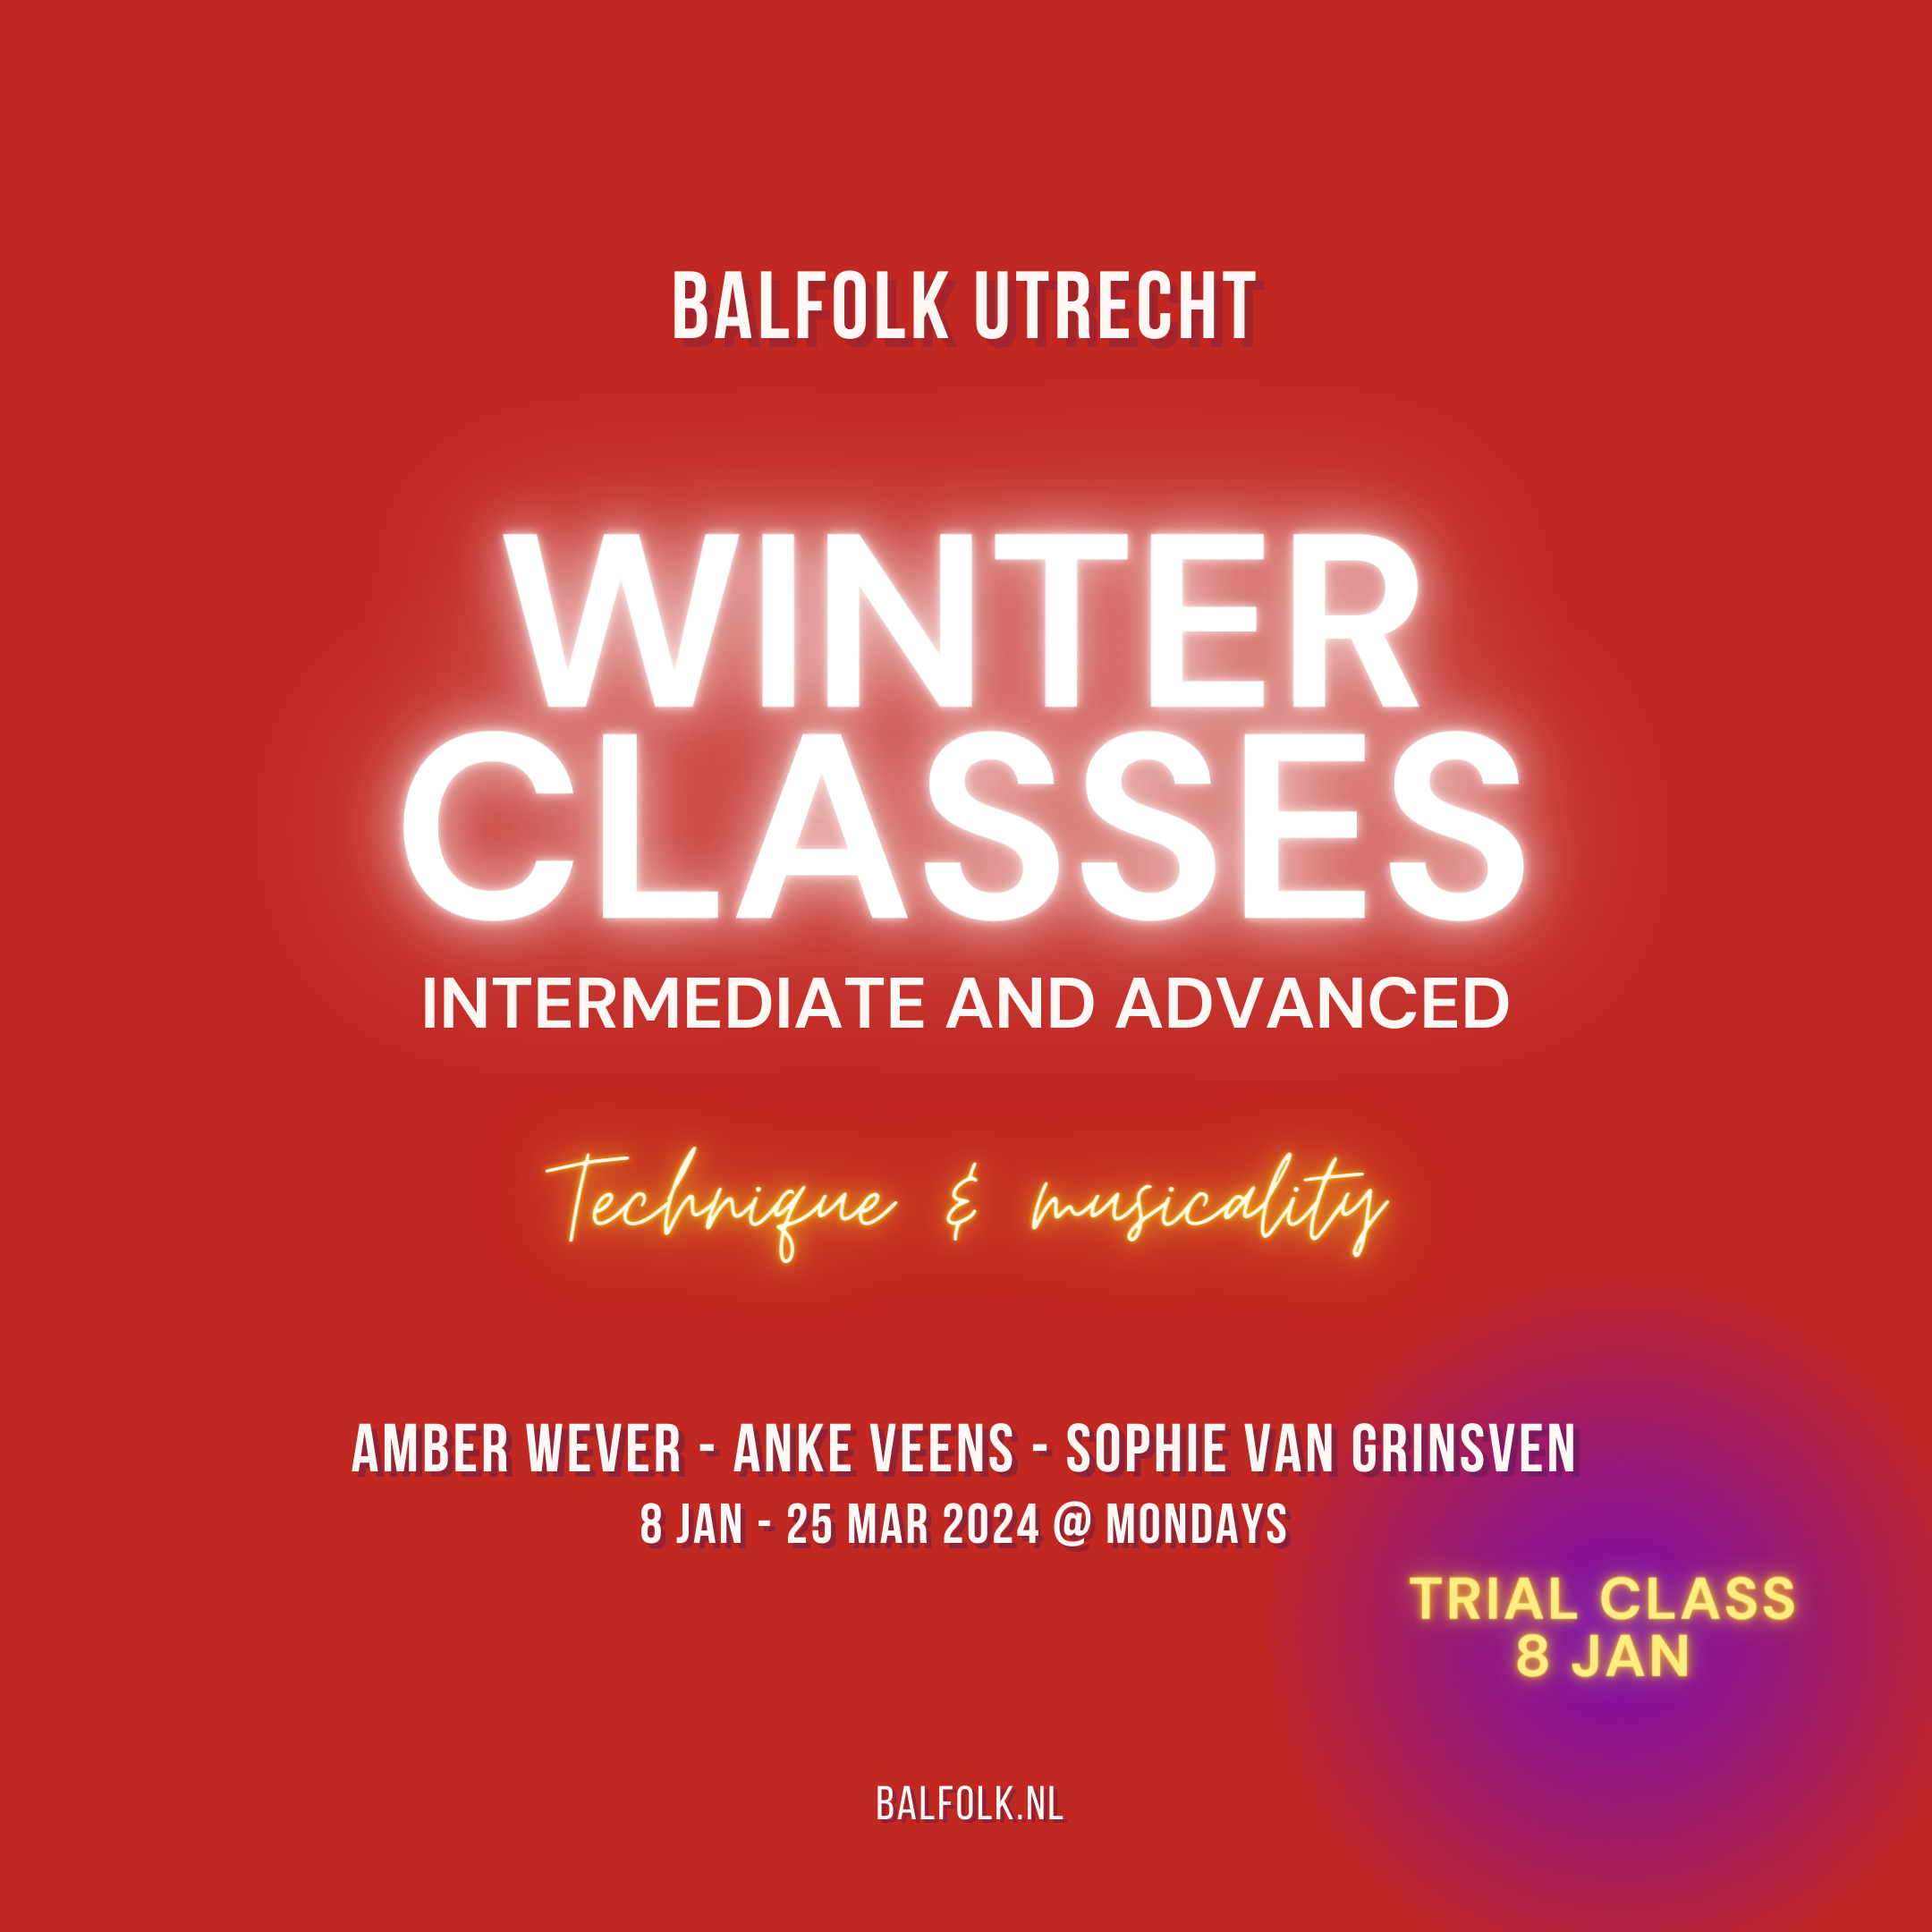 Proefles 🇳🇱/🇬🇧 - Balfolk Utrecht - Winter Classes